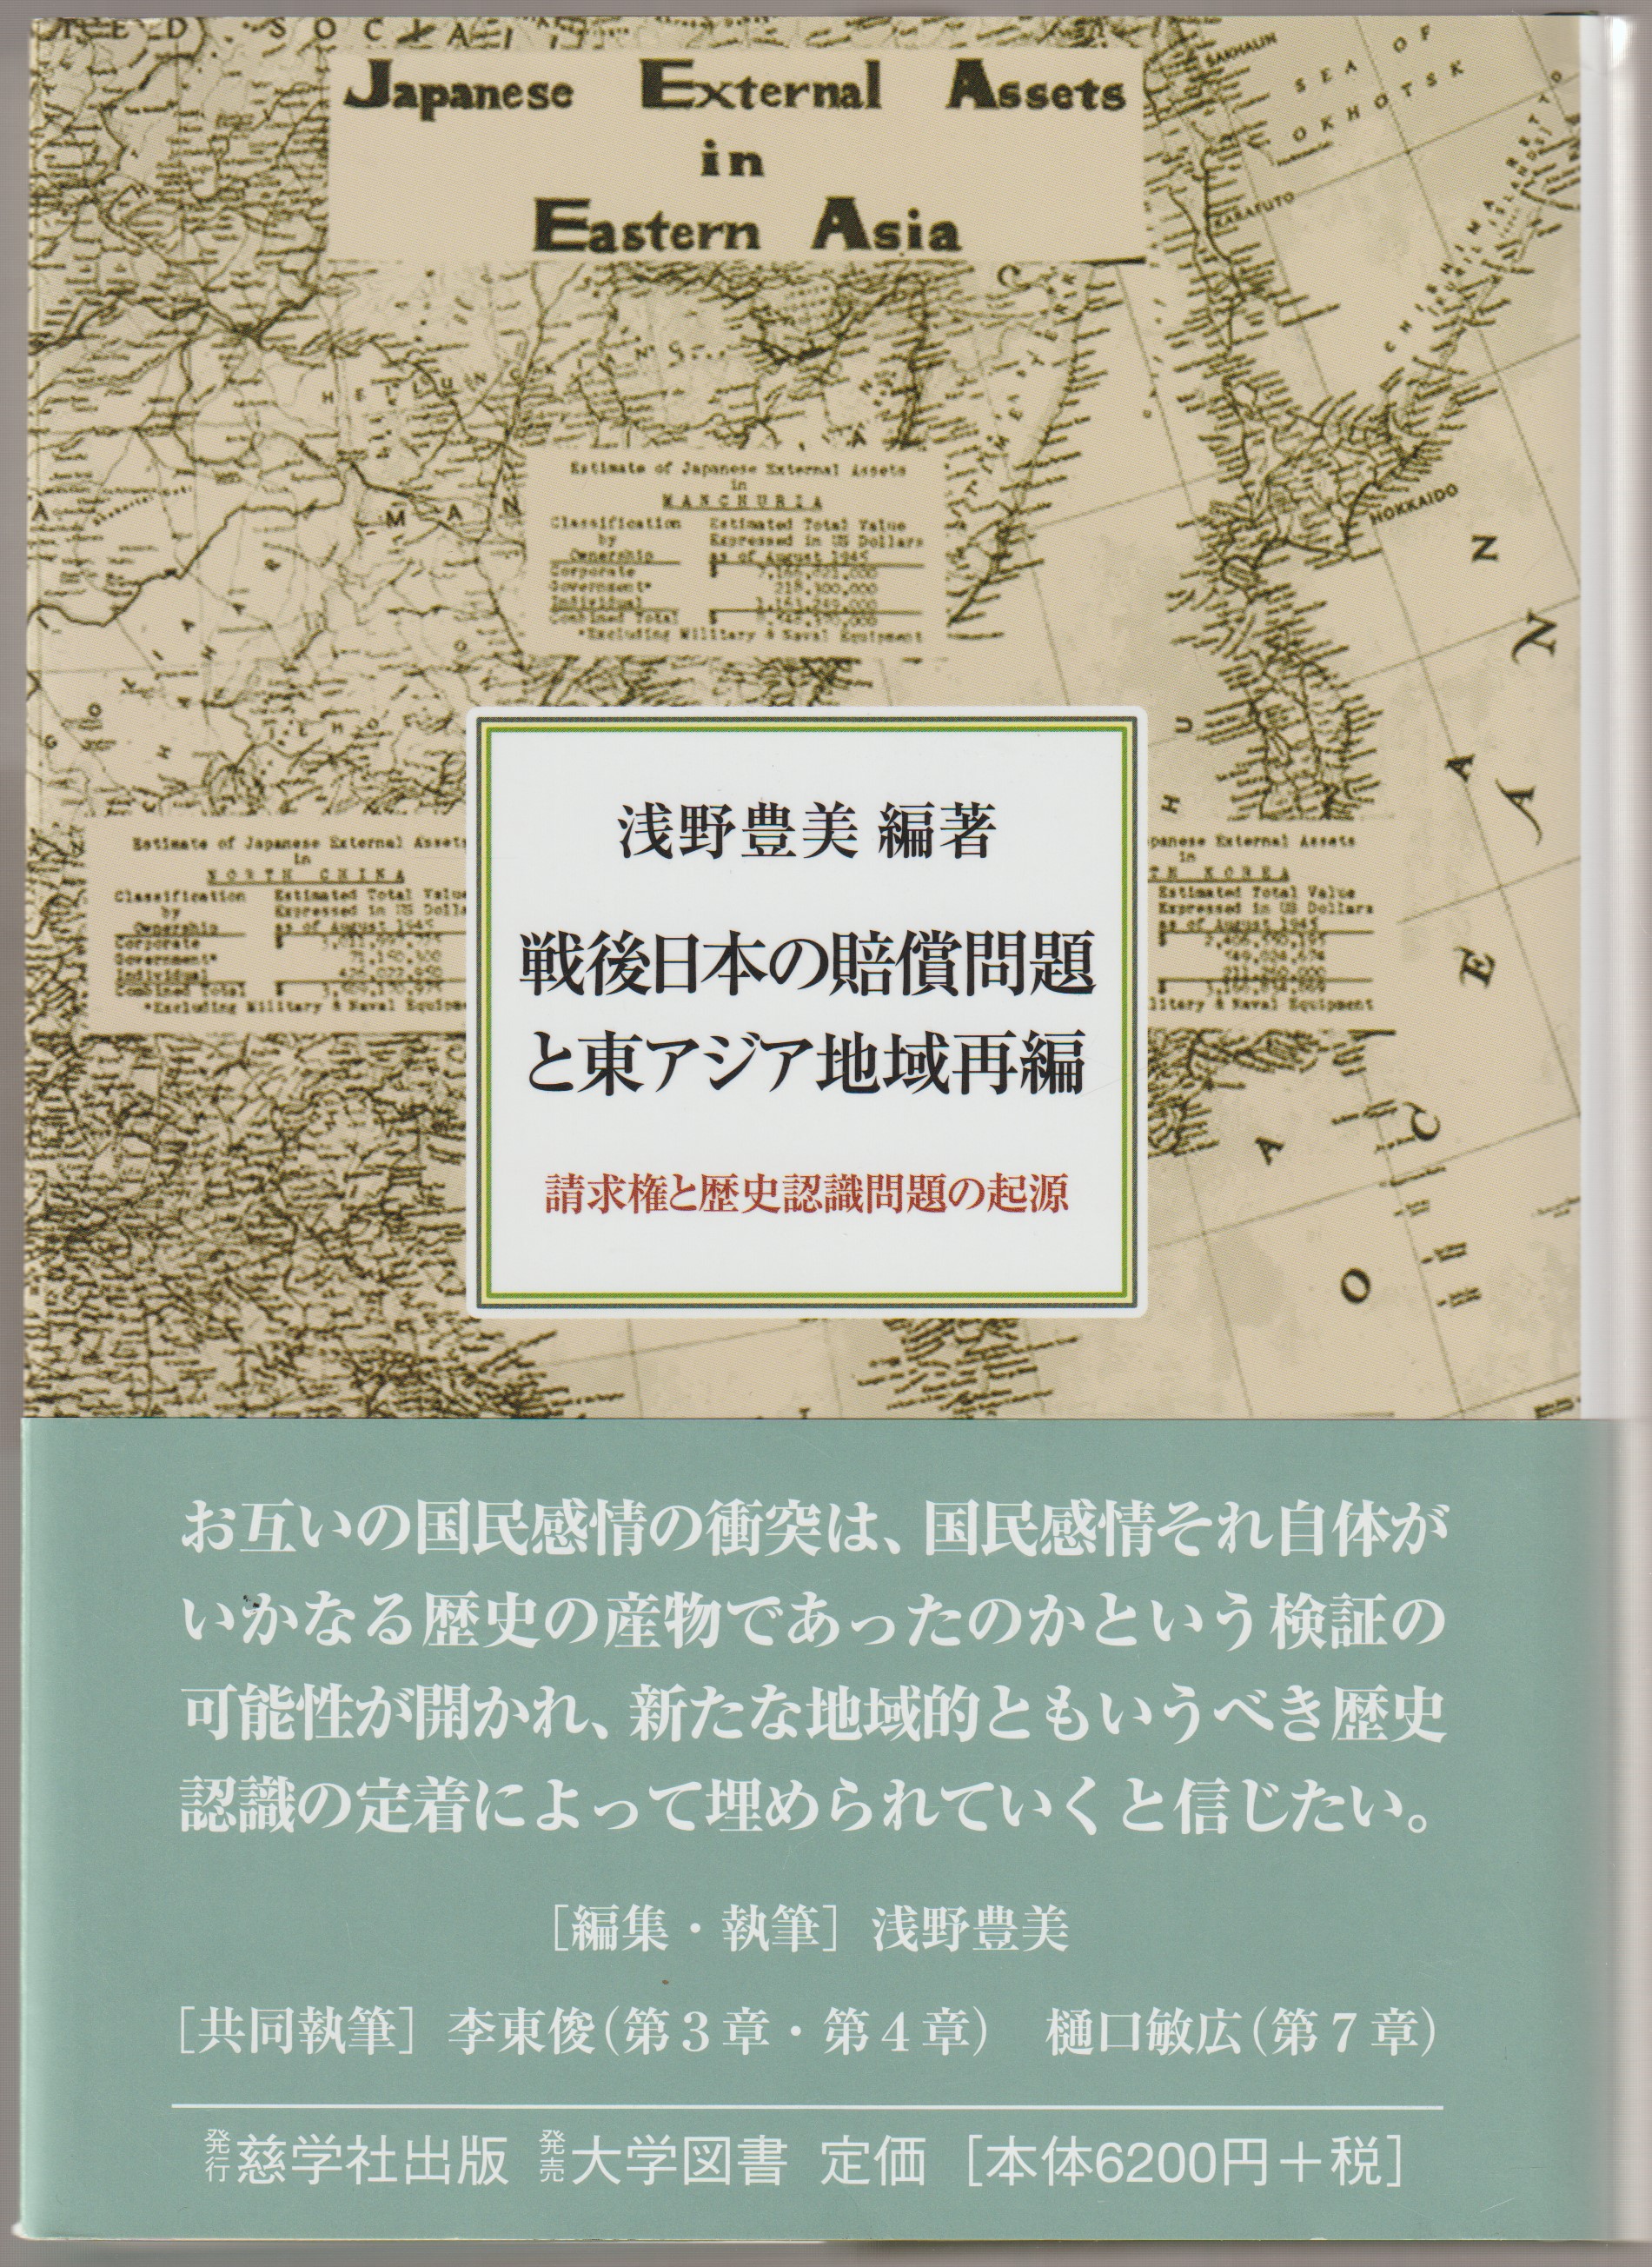 戦後日本の賠償問題と東アジア地域再編 : 請求権と歴史認識問題の起源